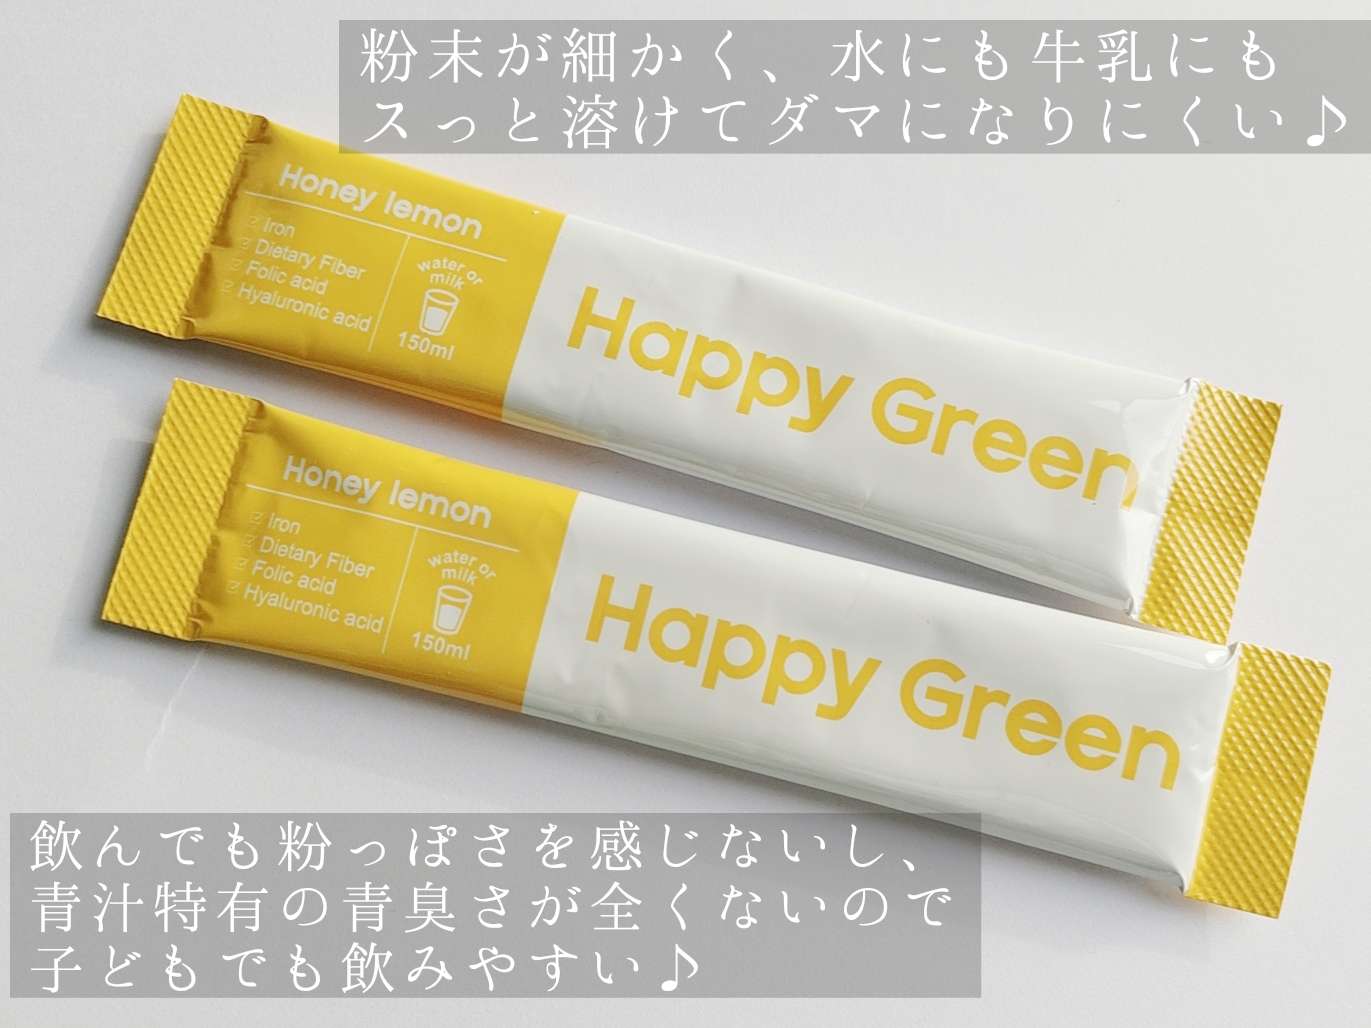 Happy Green
グリーンファイバーハニーレモンに関する優亜さんの口コミ画像3